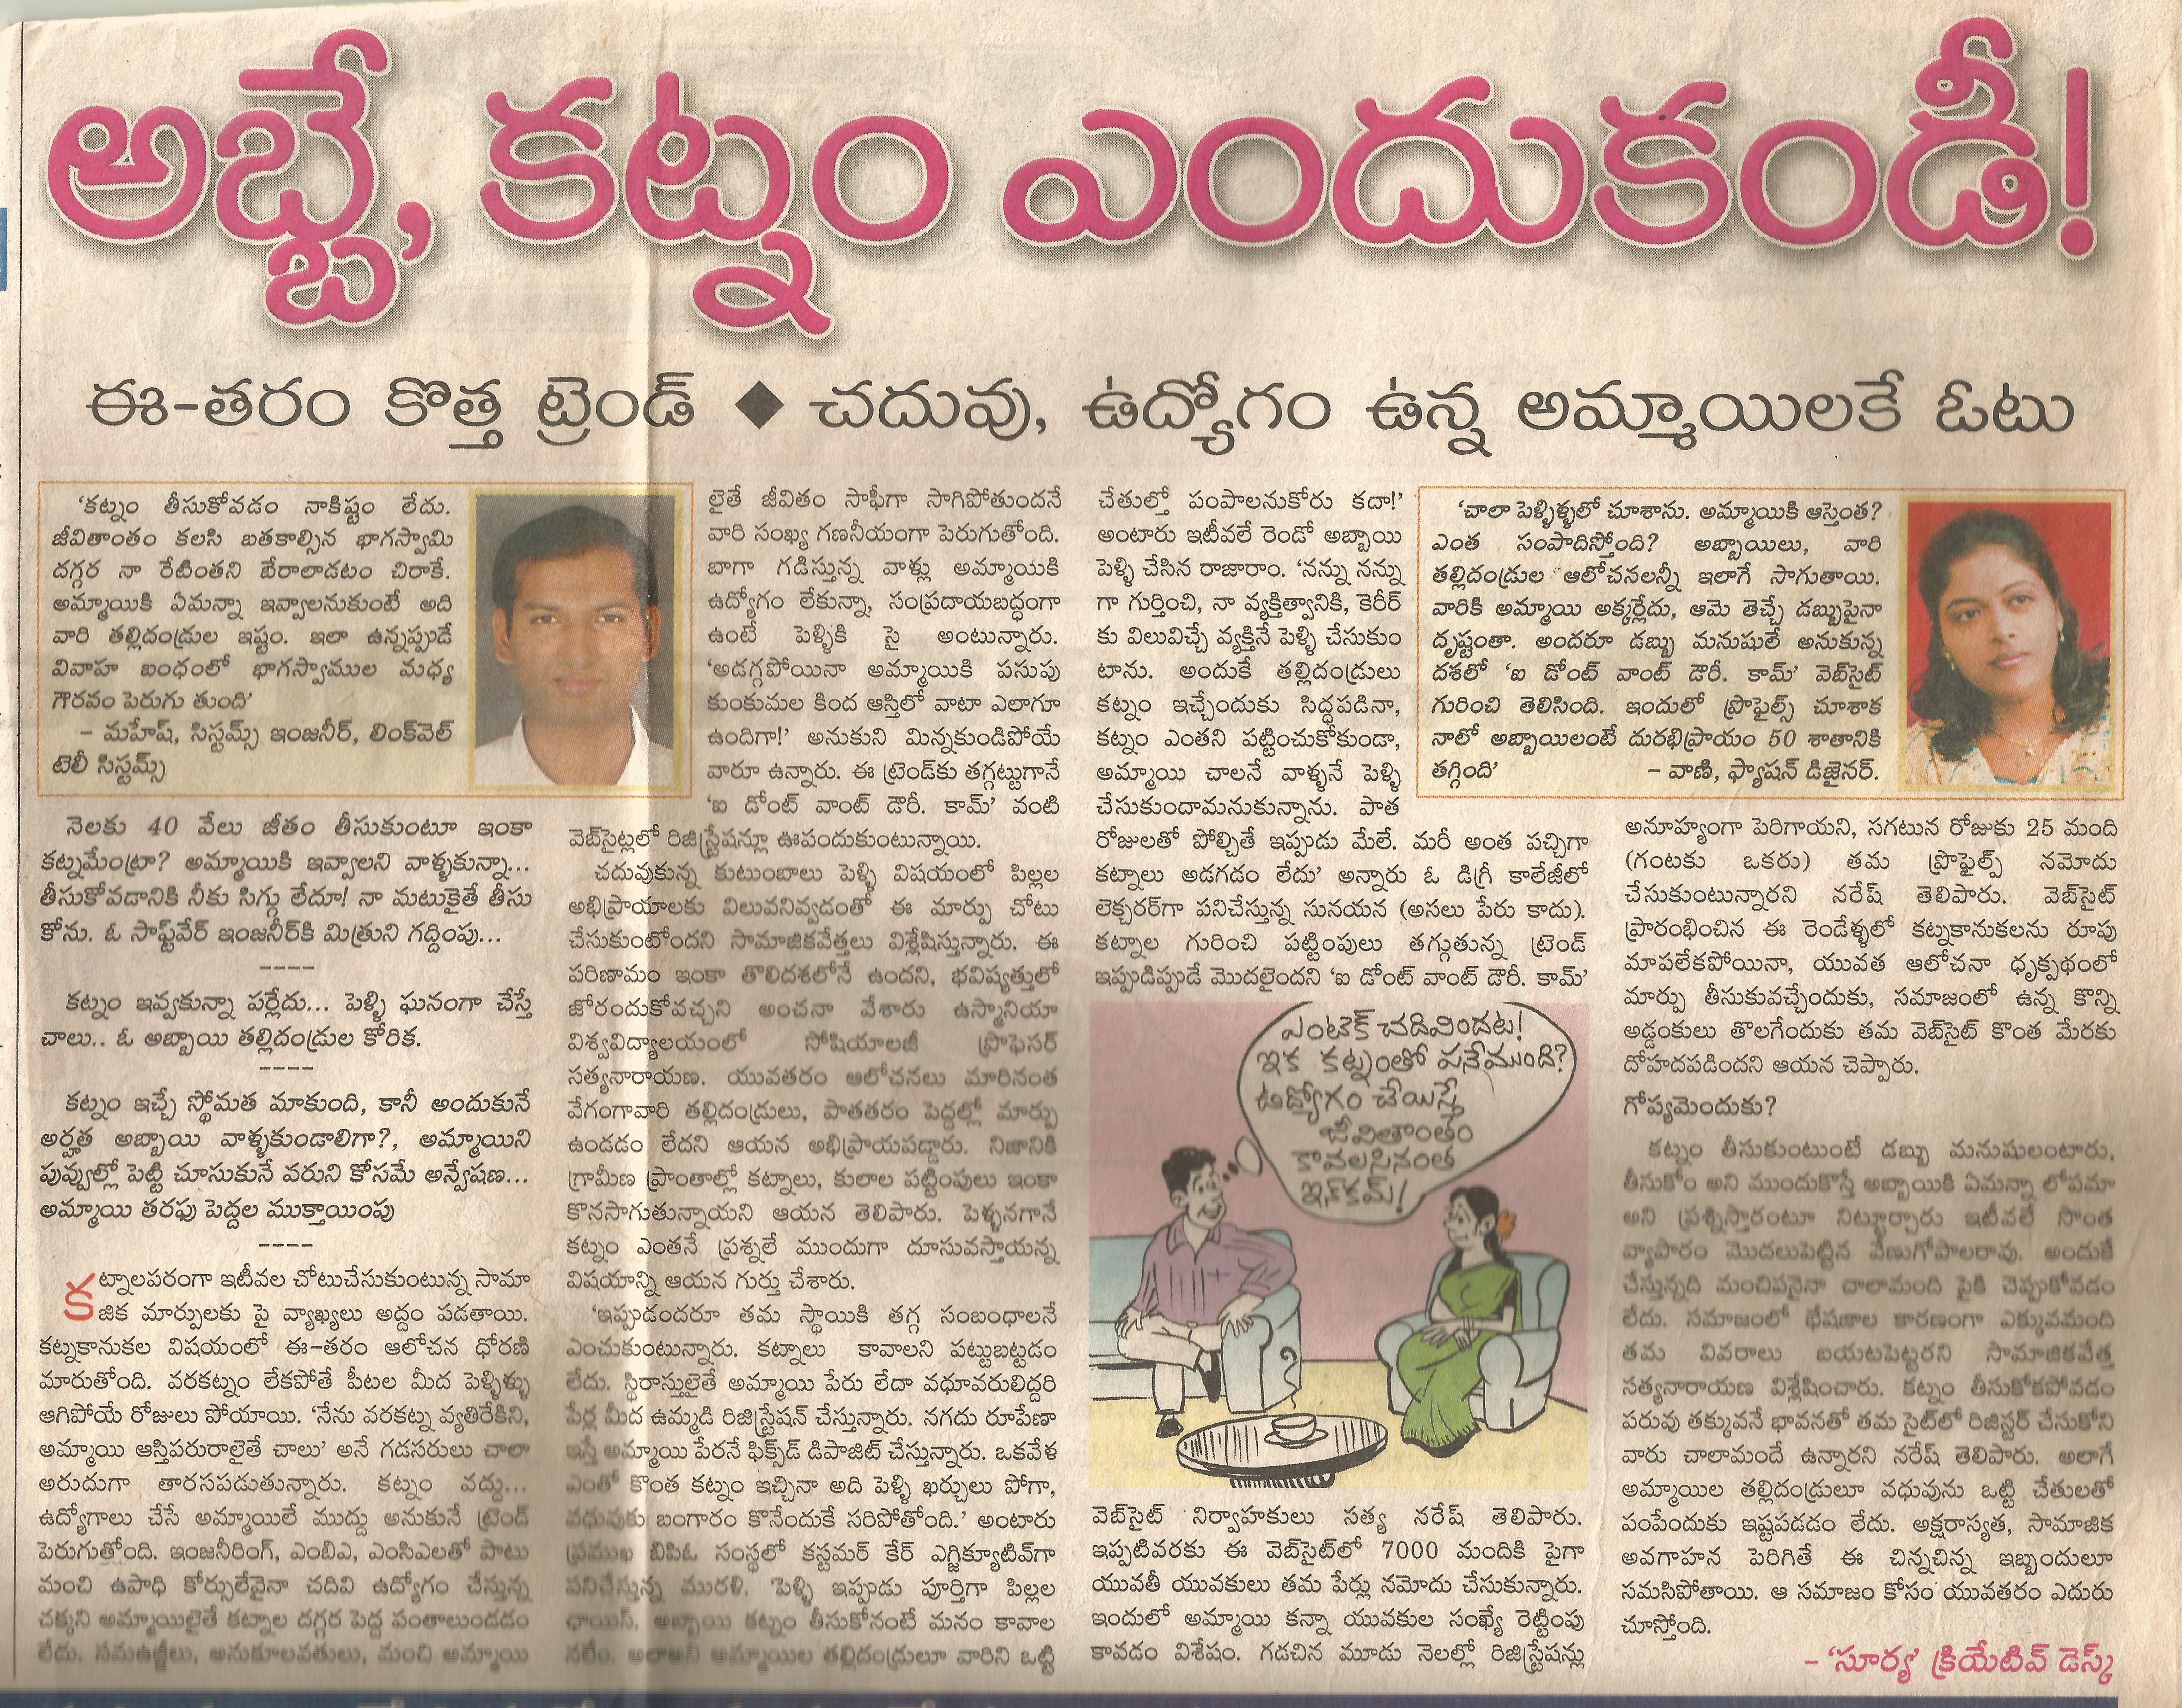 Surya News 02 feb 2008